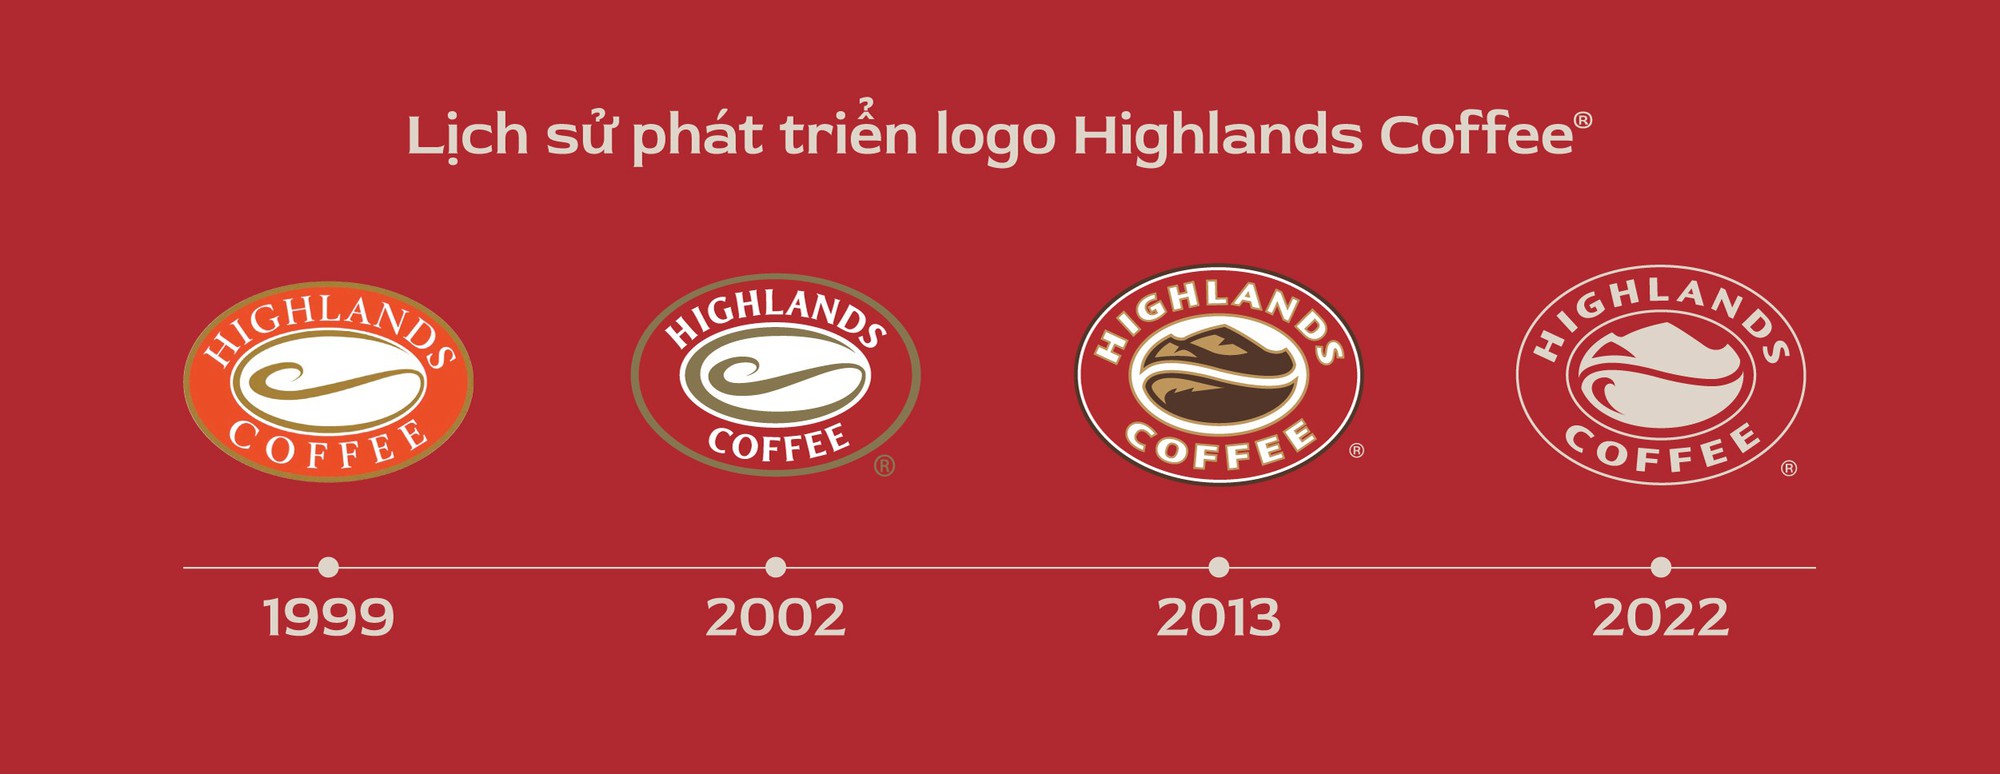 Highlands Coffee làm mới thương hiệu với hình ảnh trẻ trung, đa sắc - Ảnh 4.